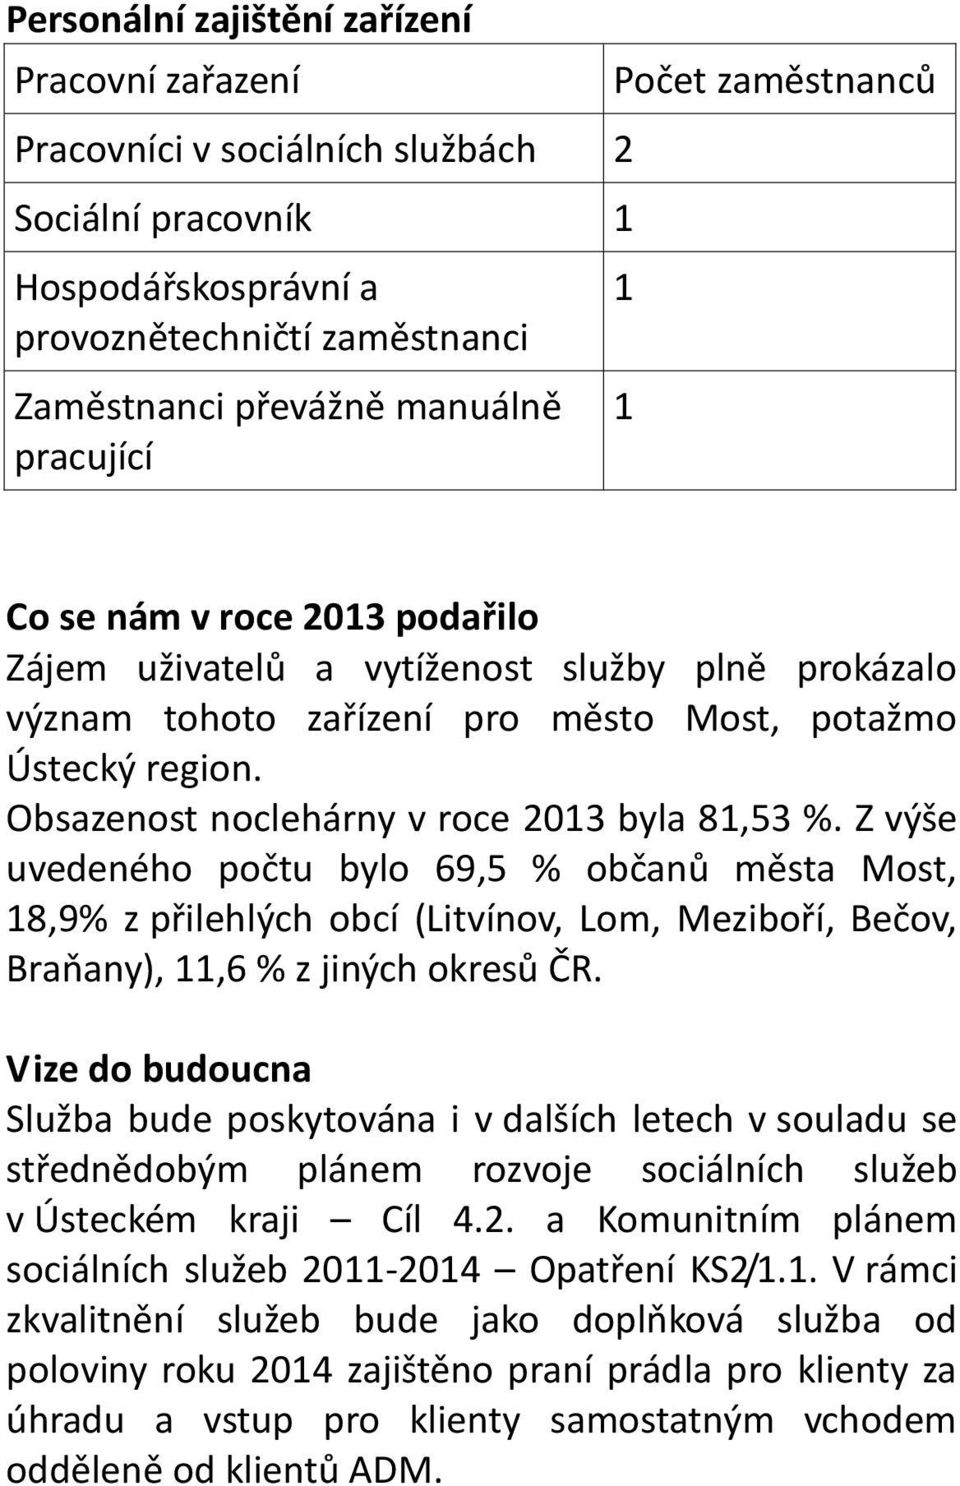 Obsazenost noclehárny v roce 2013 byla 81,53 %. Z výše uvedeného počtu bylo 69,5 % občanů města Most, 18,9% z přilehlých obcí (Litvínov, Lom, Meziboří, Bečov, Braňany), 11,6 % z jiných okresů ČR.